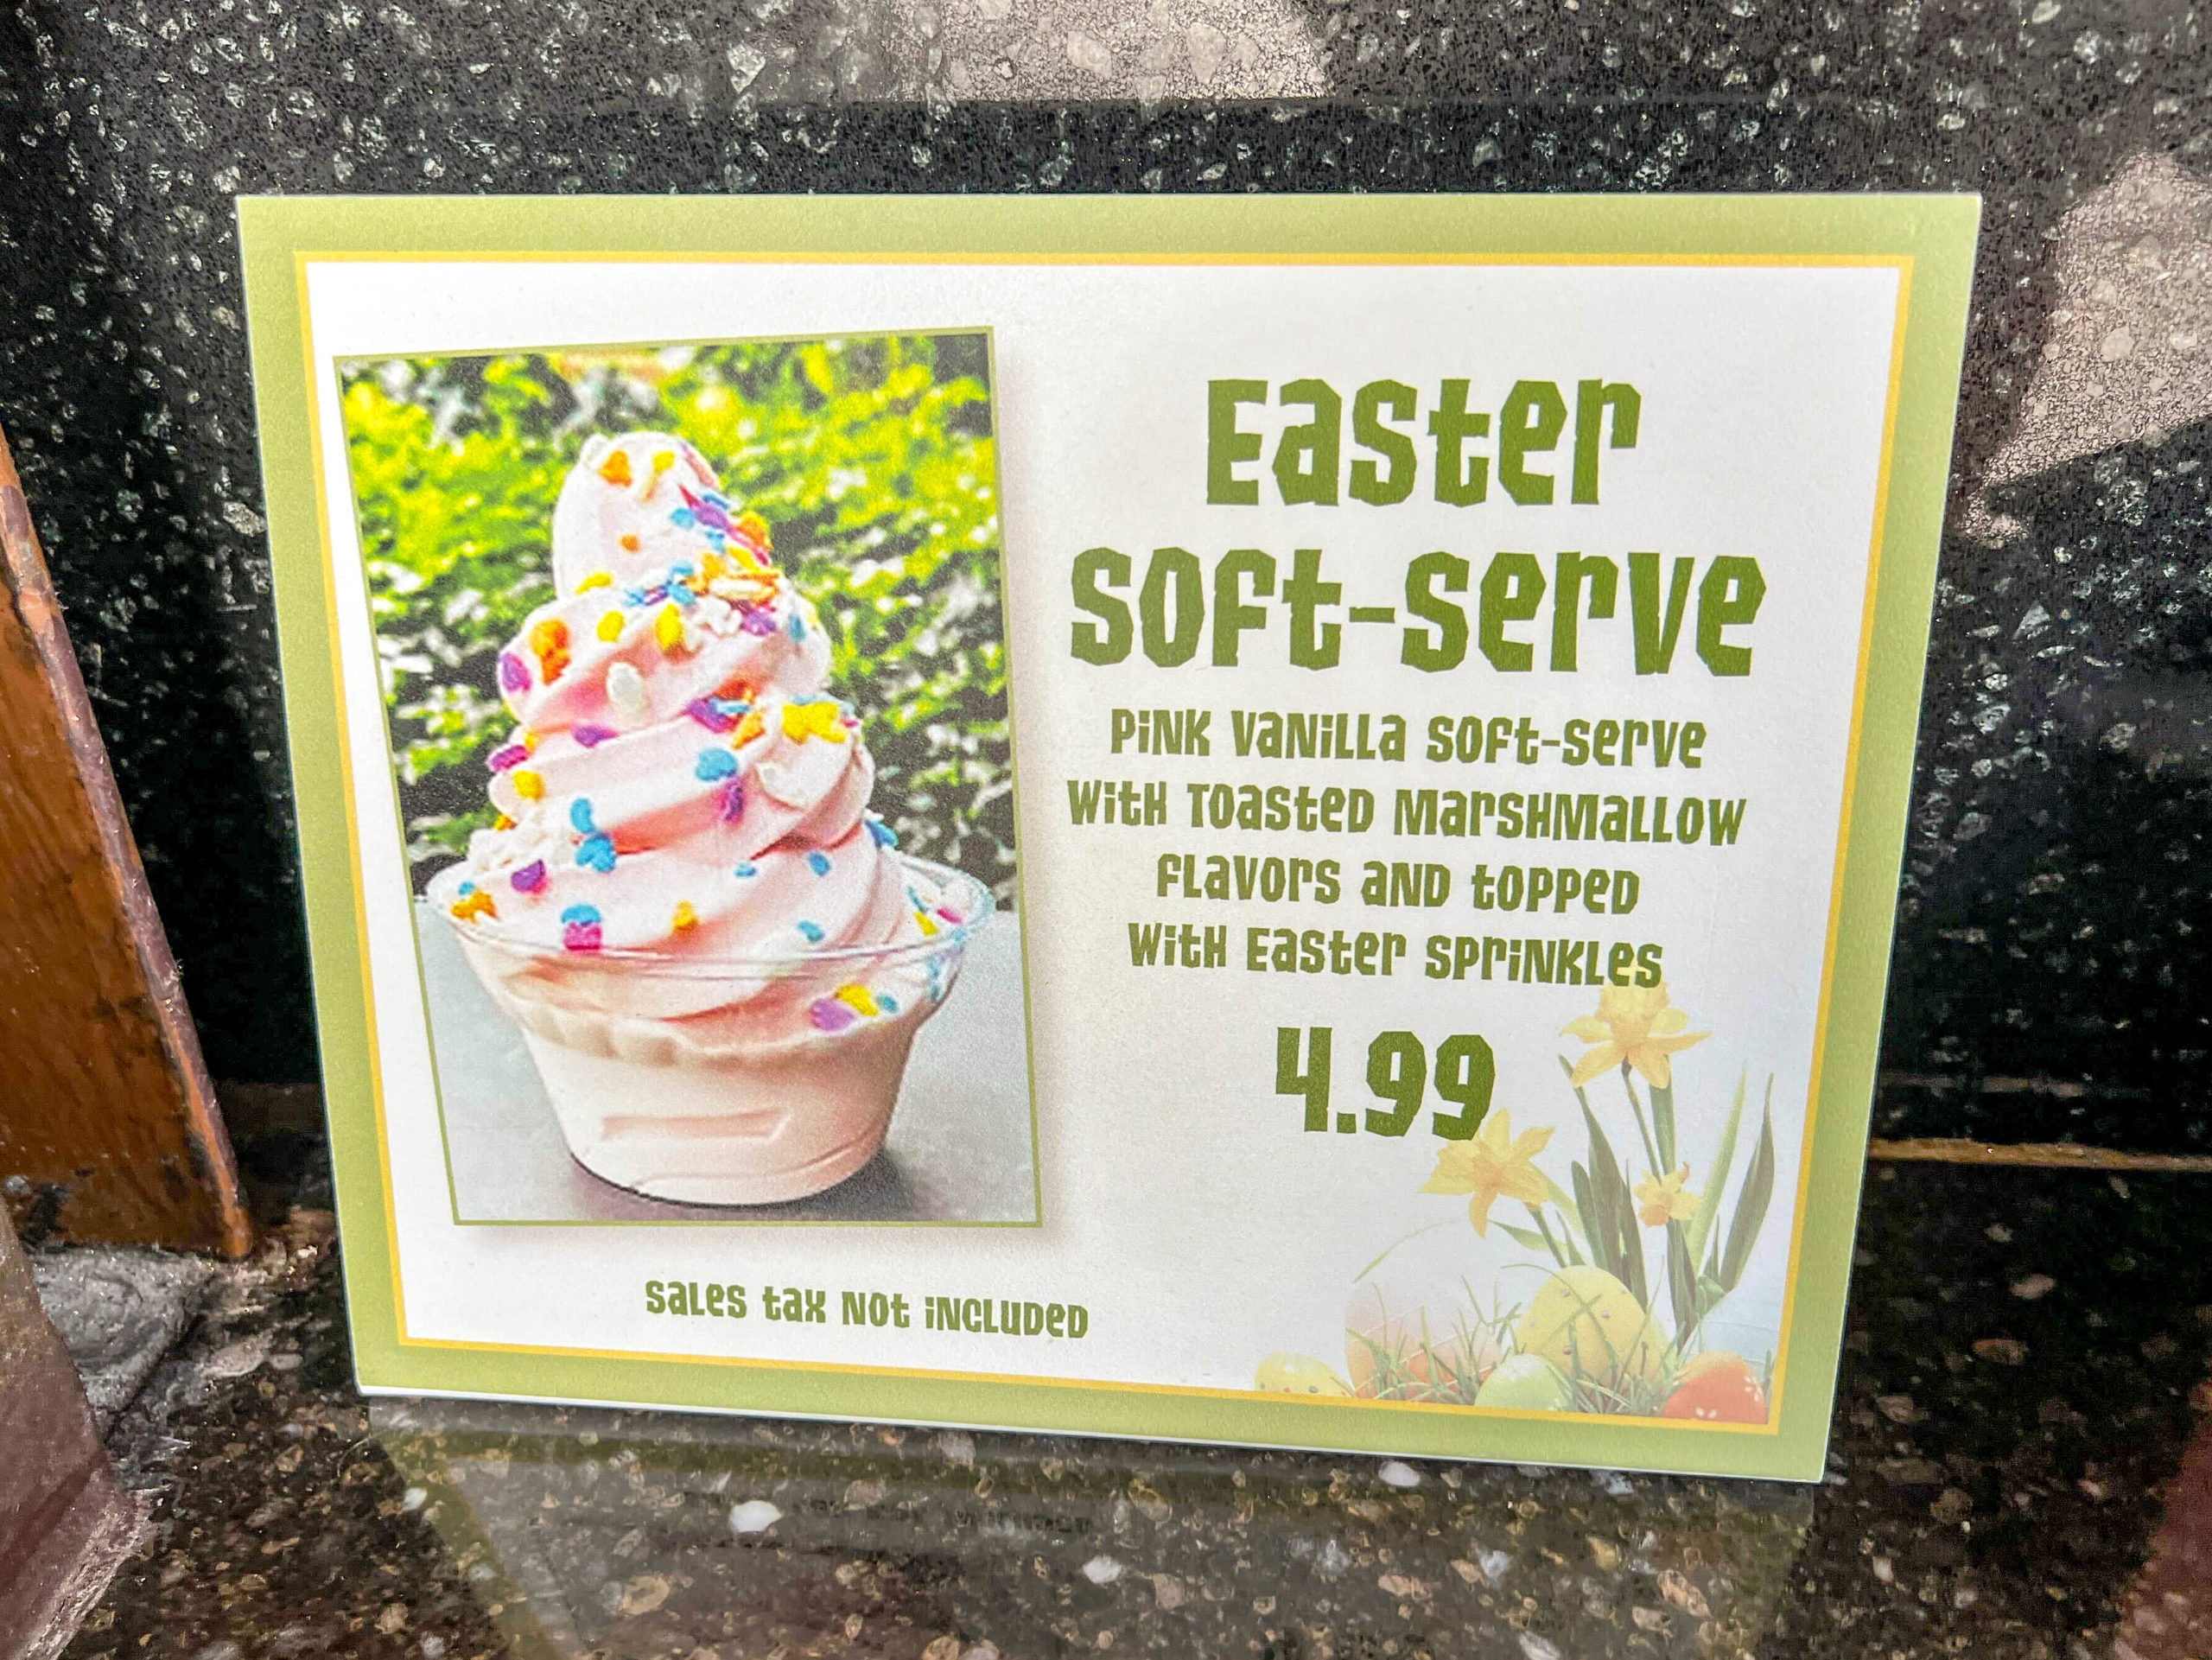 Easter soft-serve